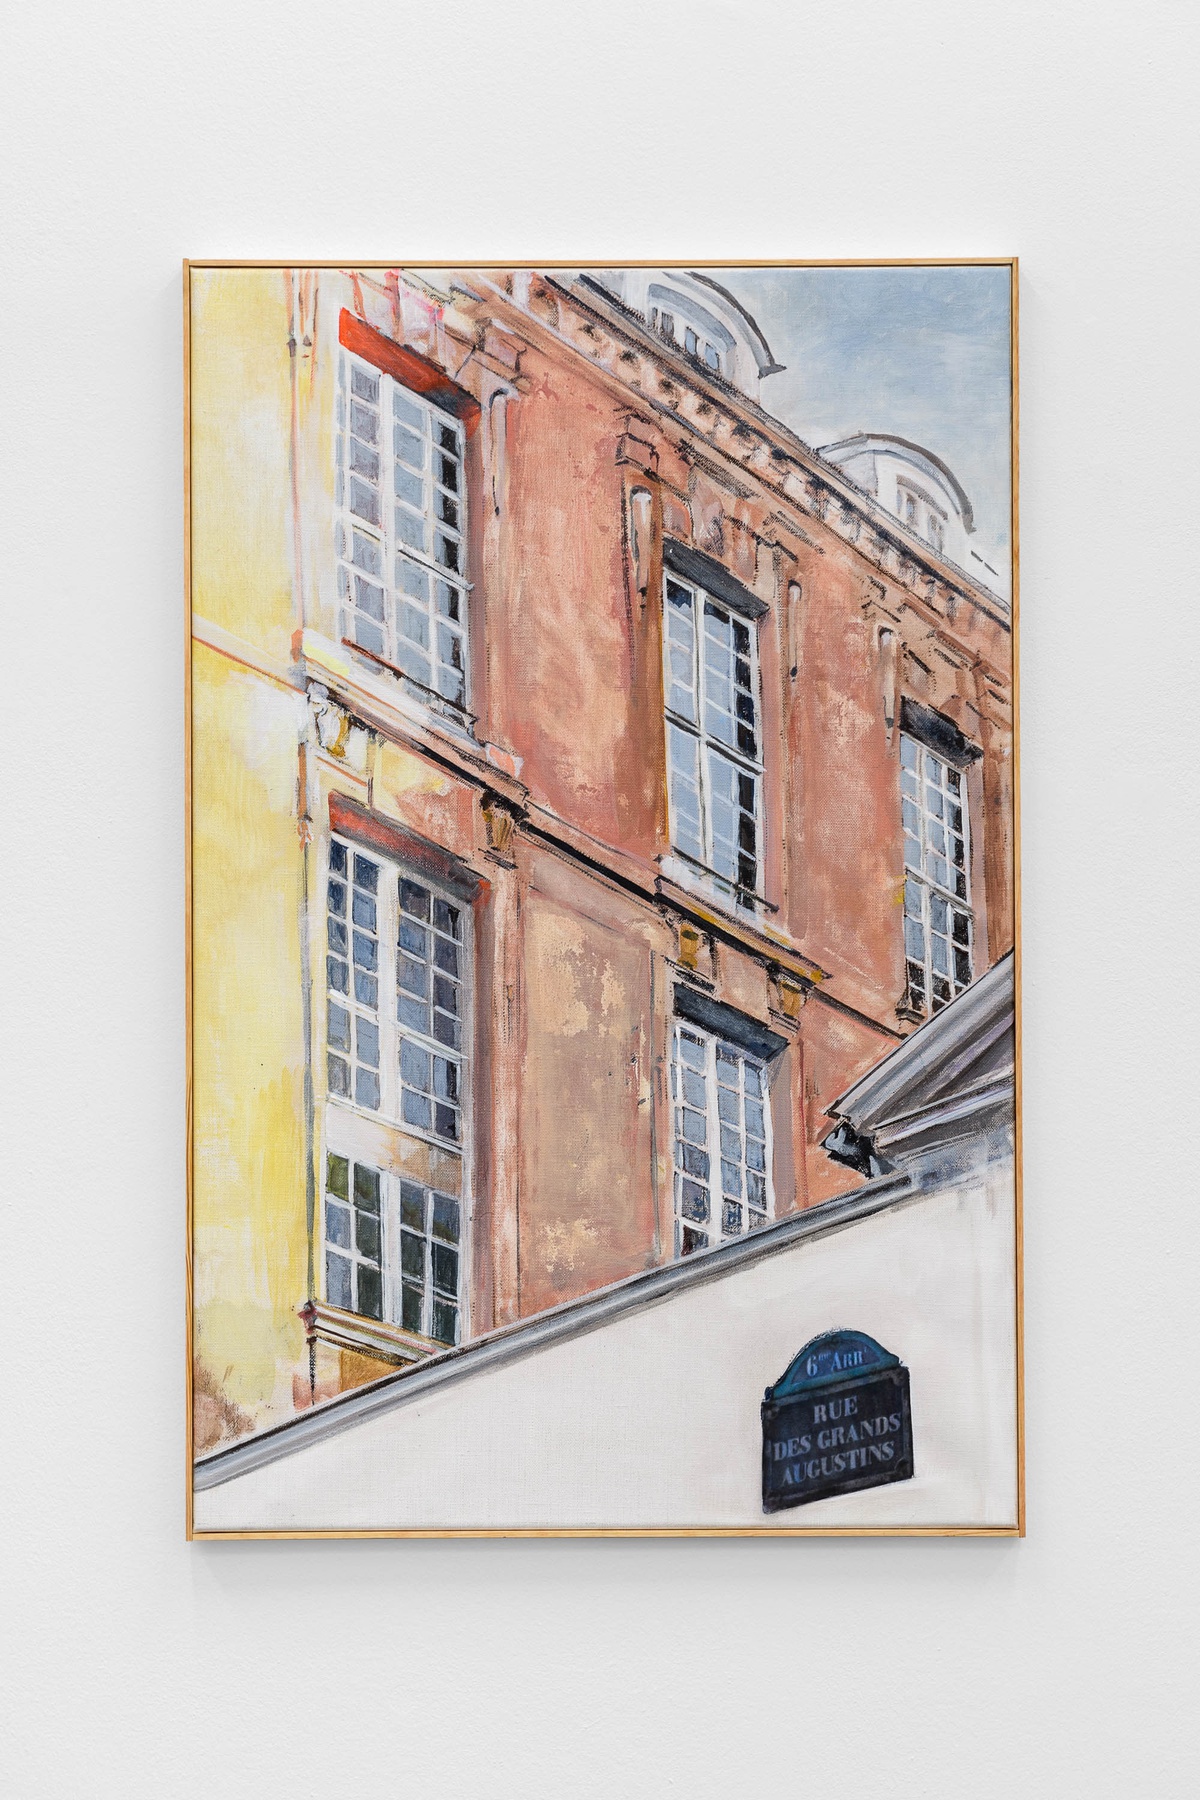 7 rue des Grands Augustins by Ariane Müller